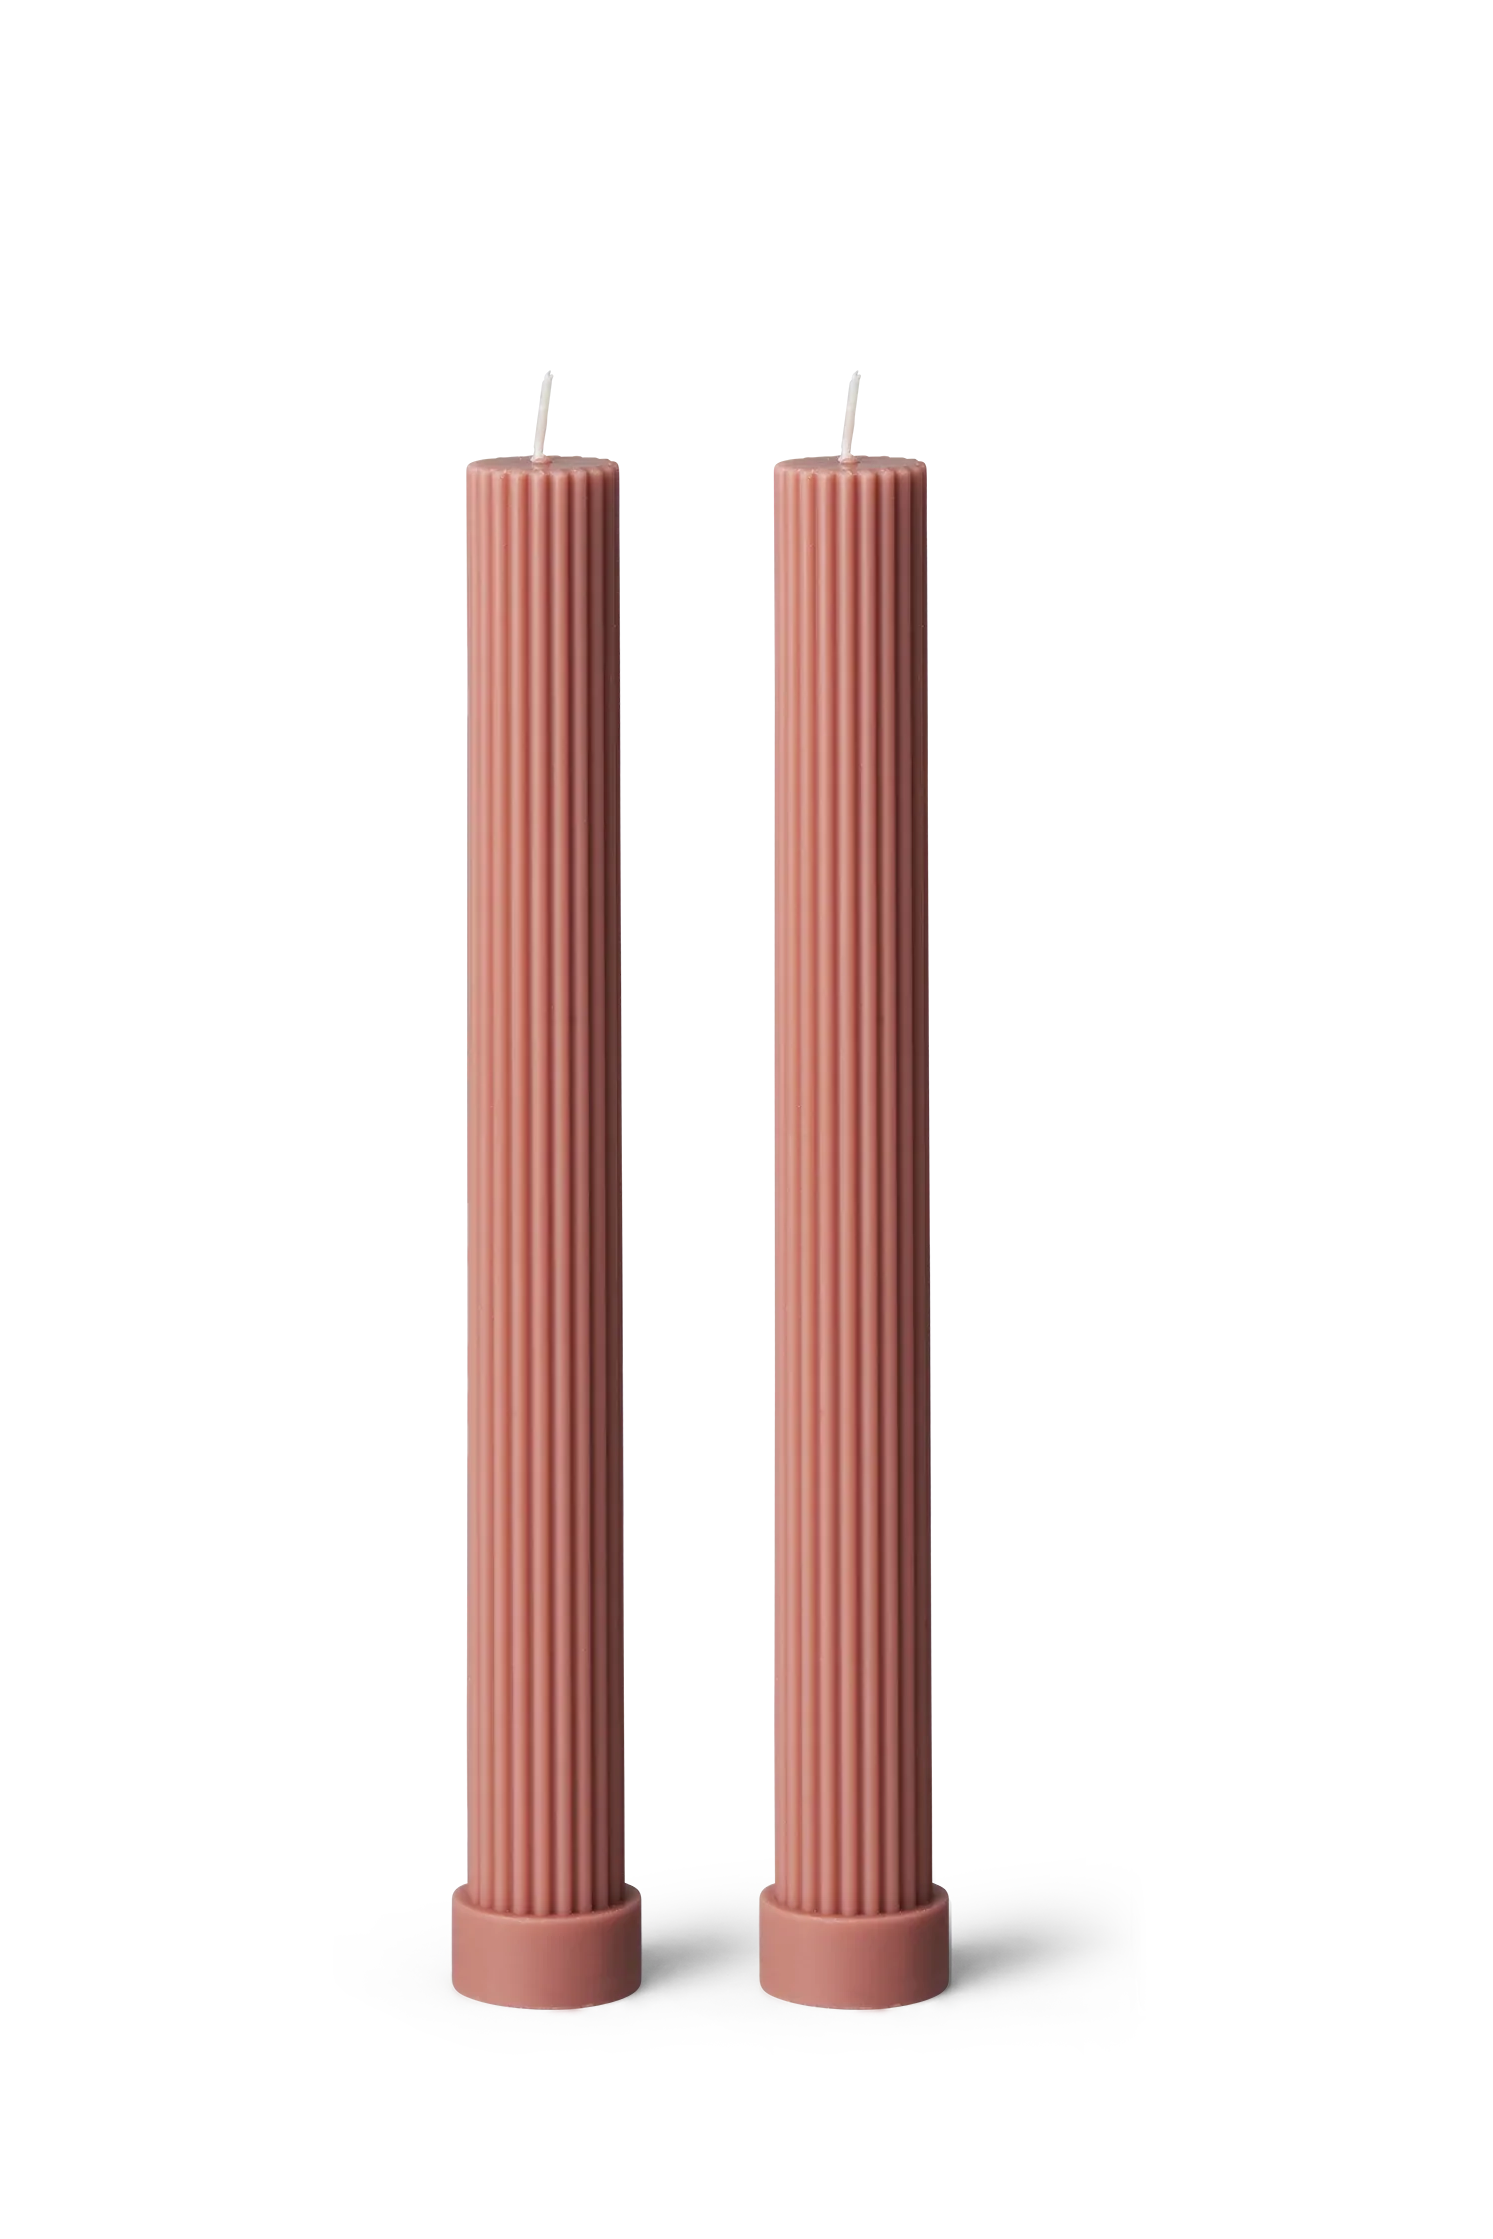 Greek Pink Pillar Candle - Set Of 2